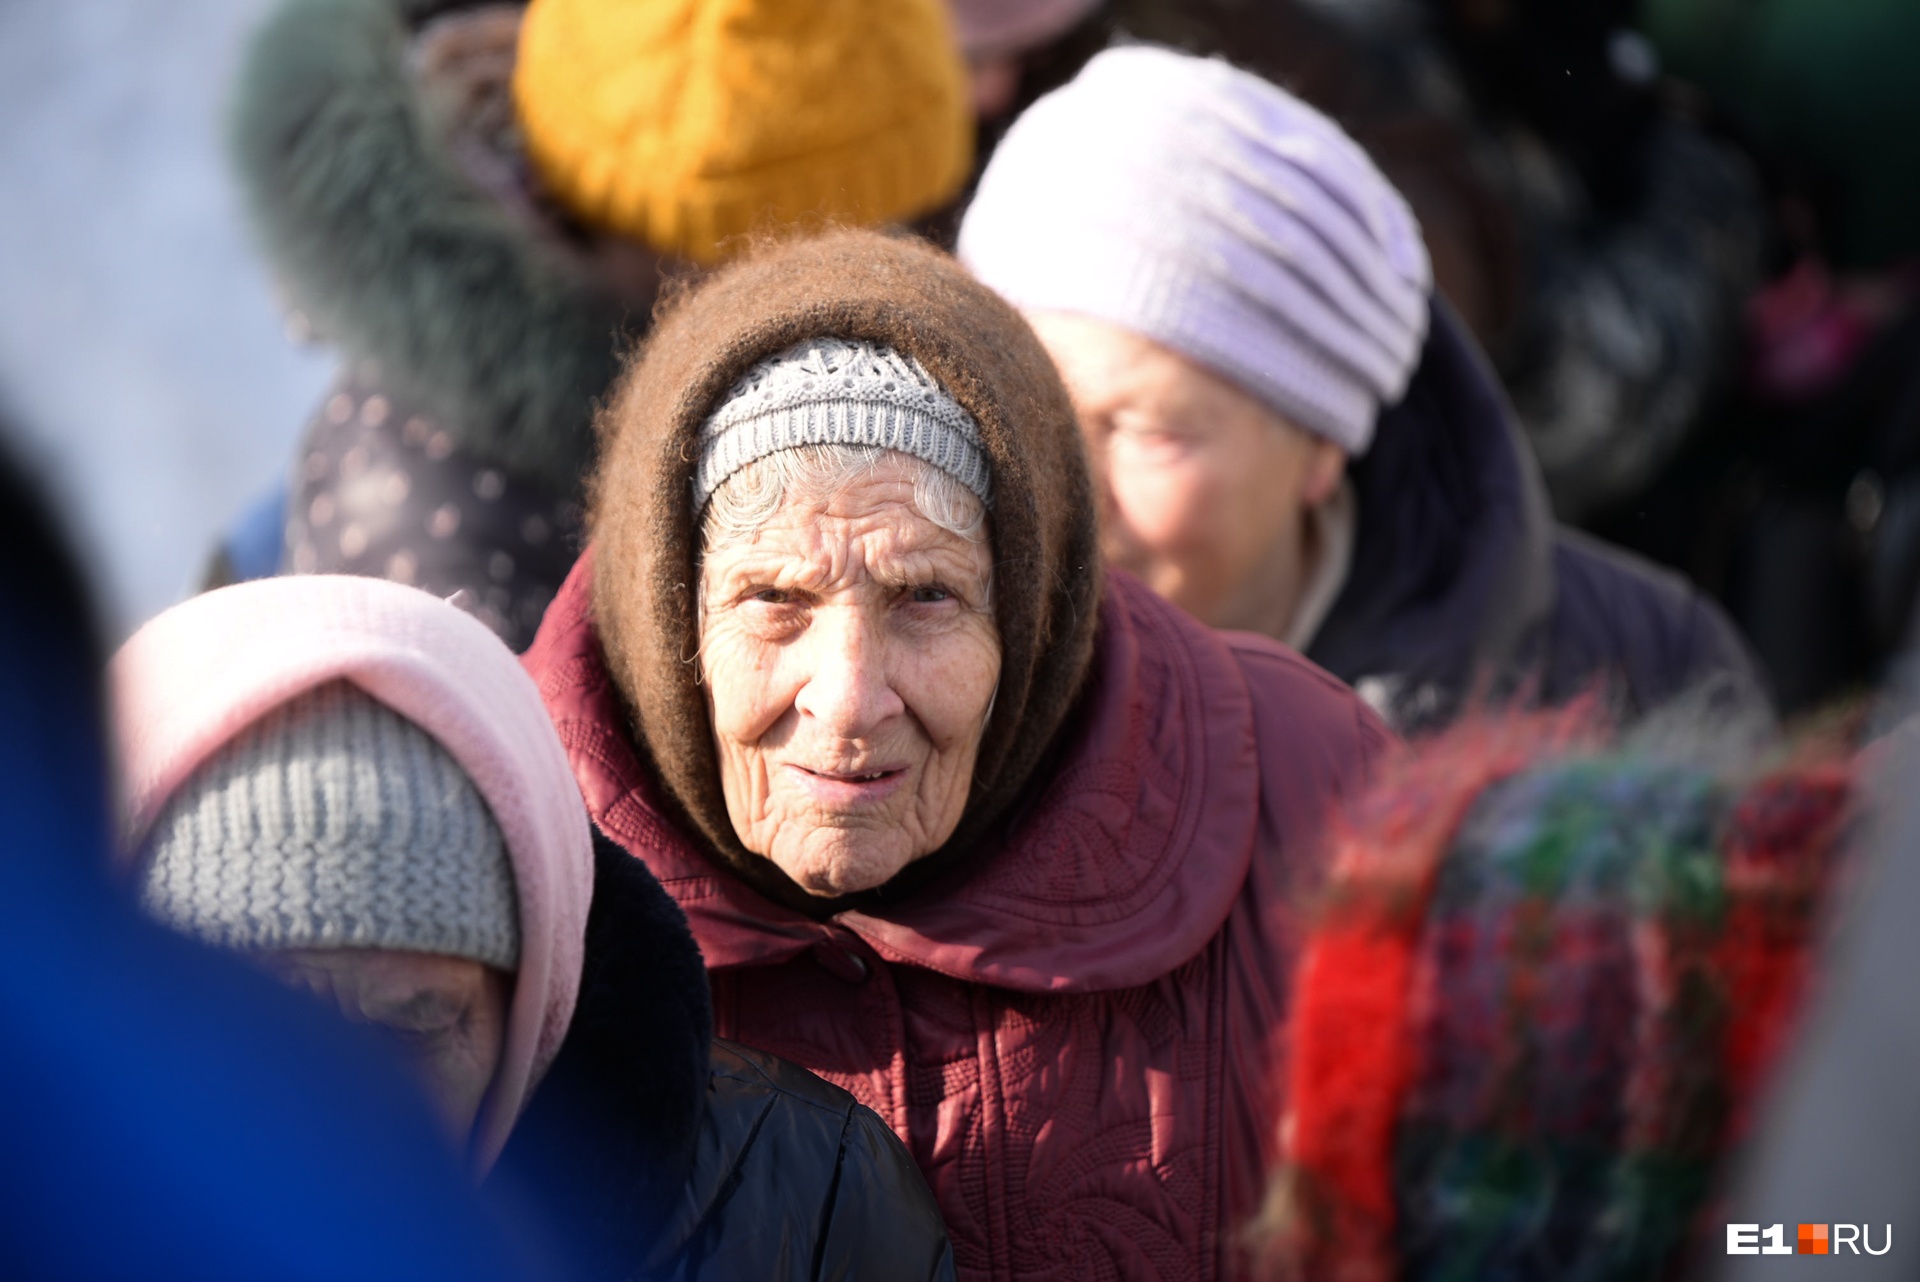 «Бабушек уже никто не разводит». Житель Екатеринбурга поговорил по душам с телефонным мошенником